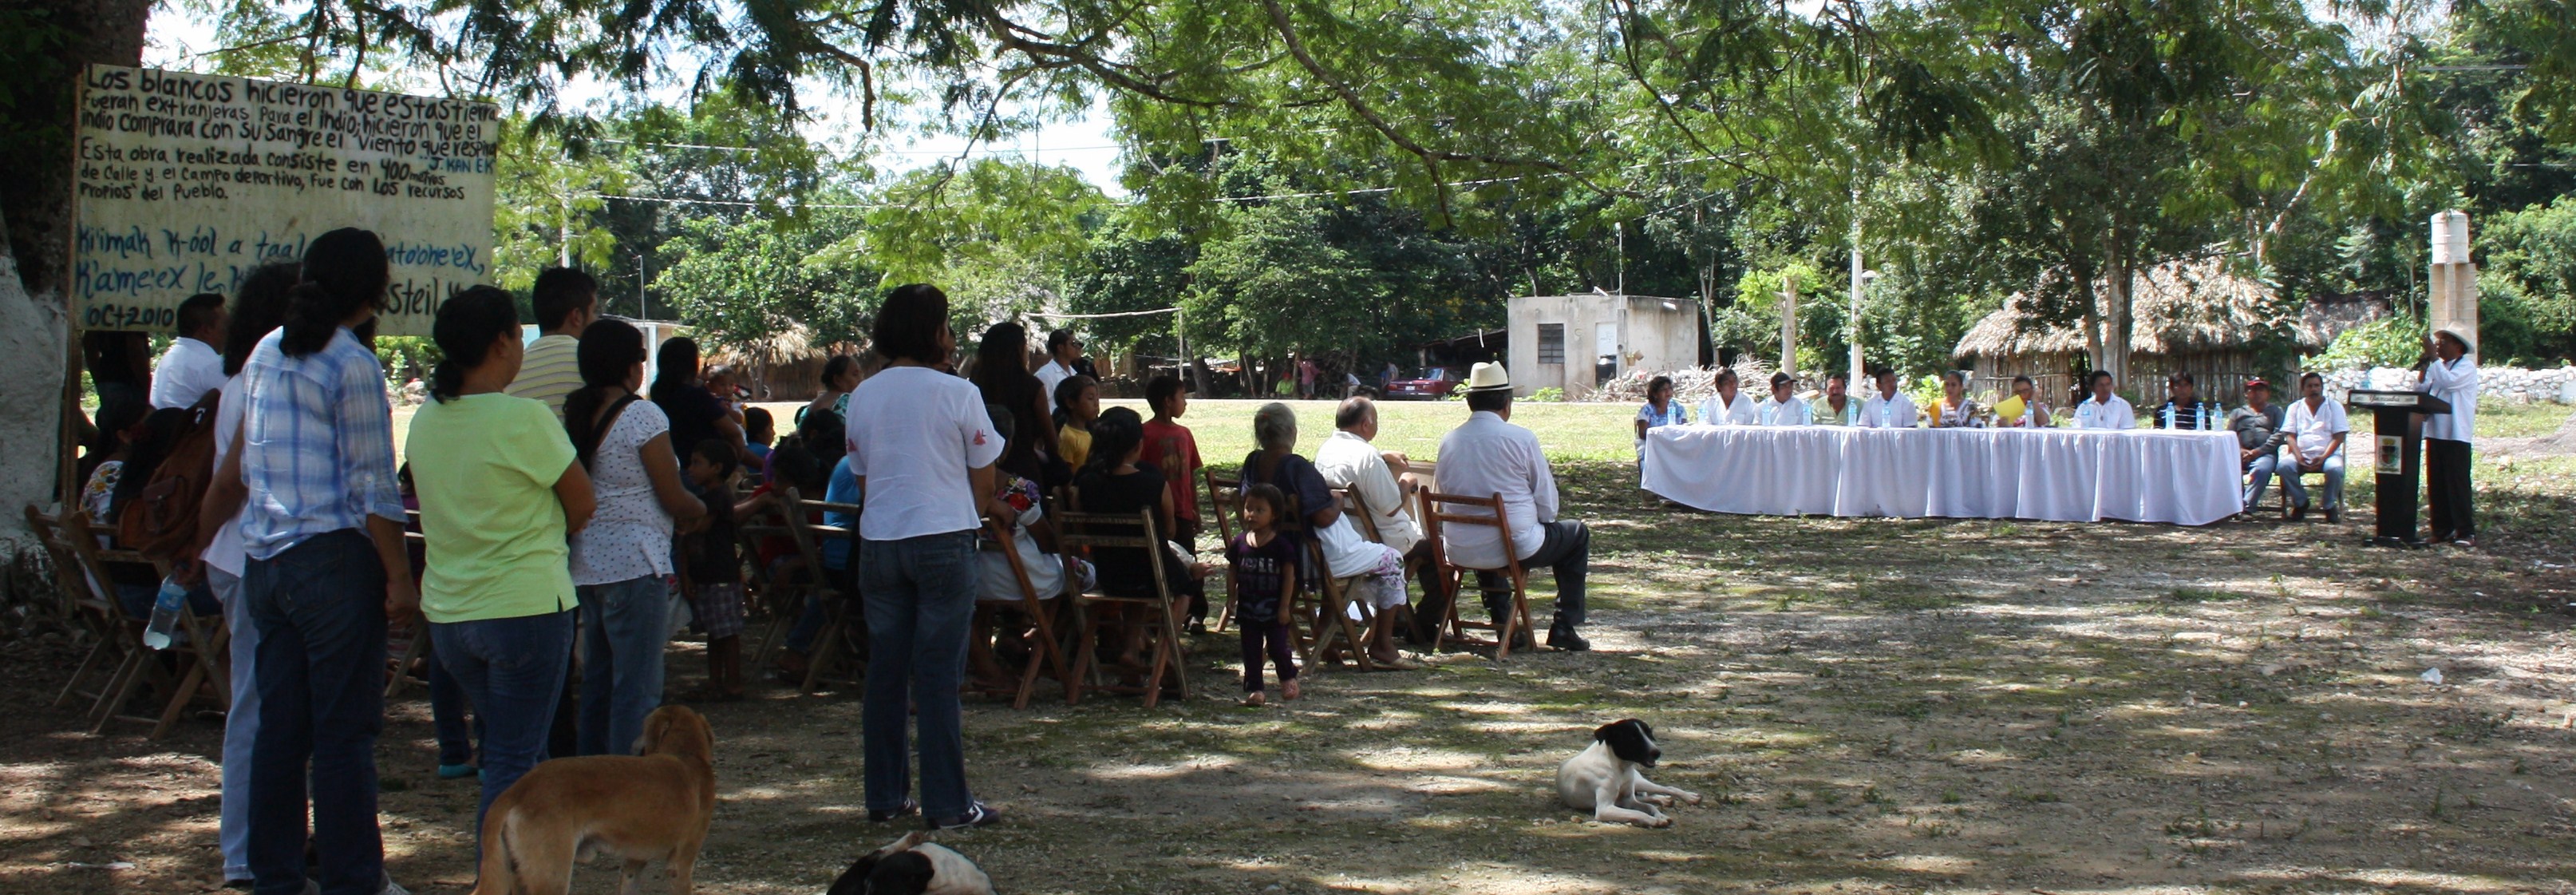 Despojan nuestras tierras y semillas, denuncian indígenas en Hopelchen, Campeche